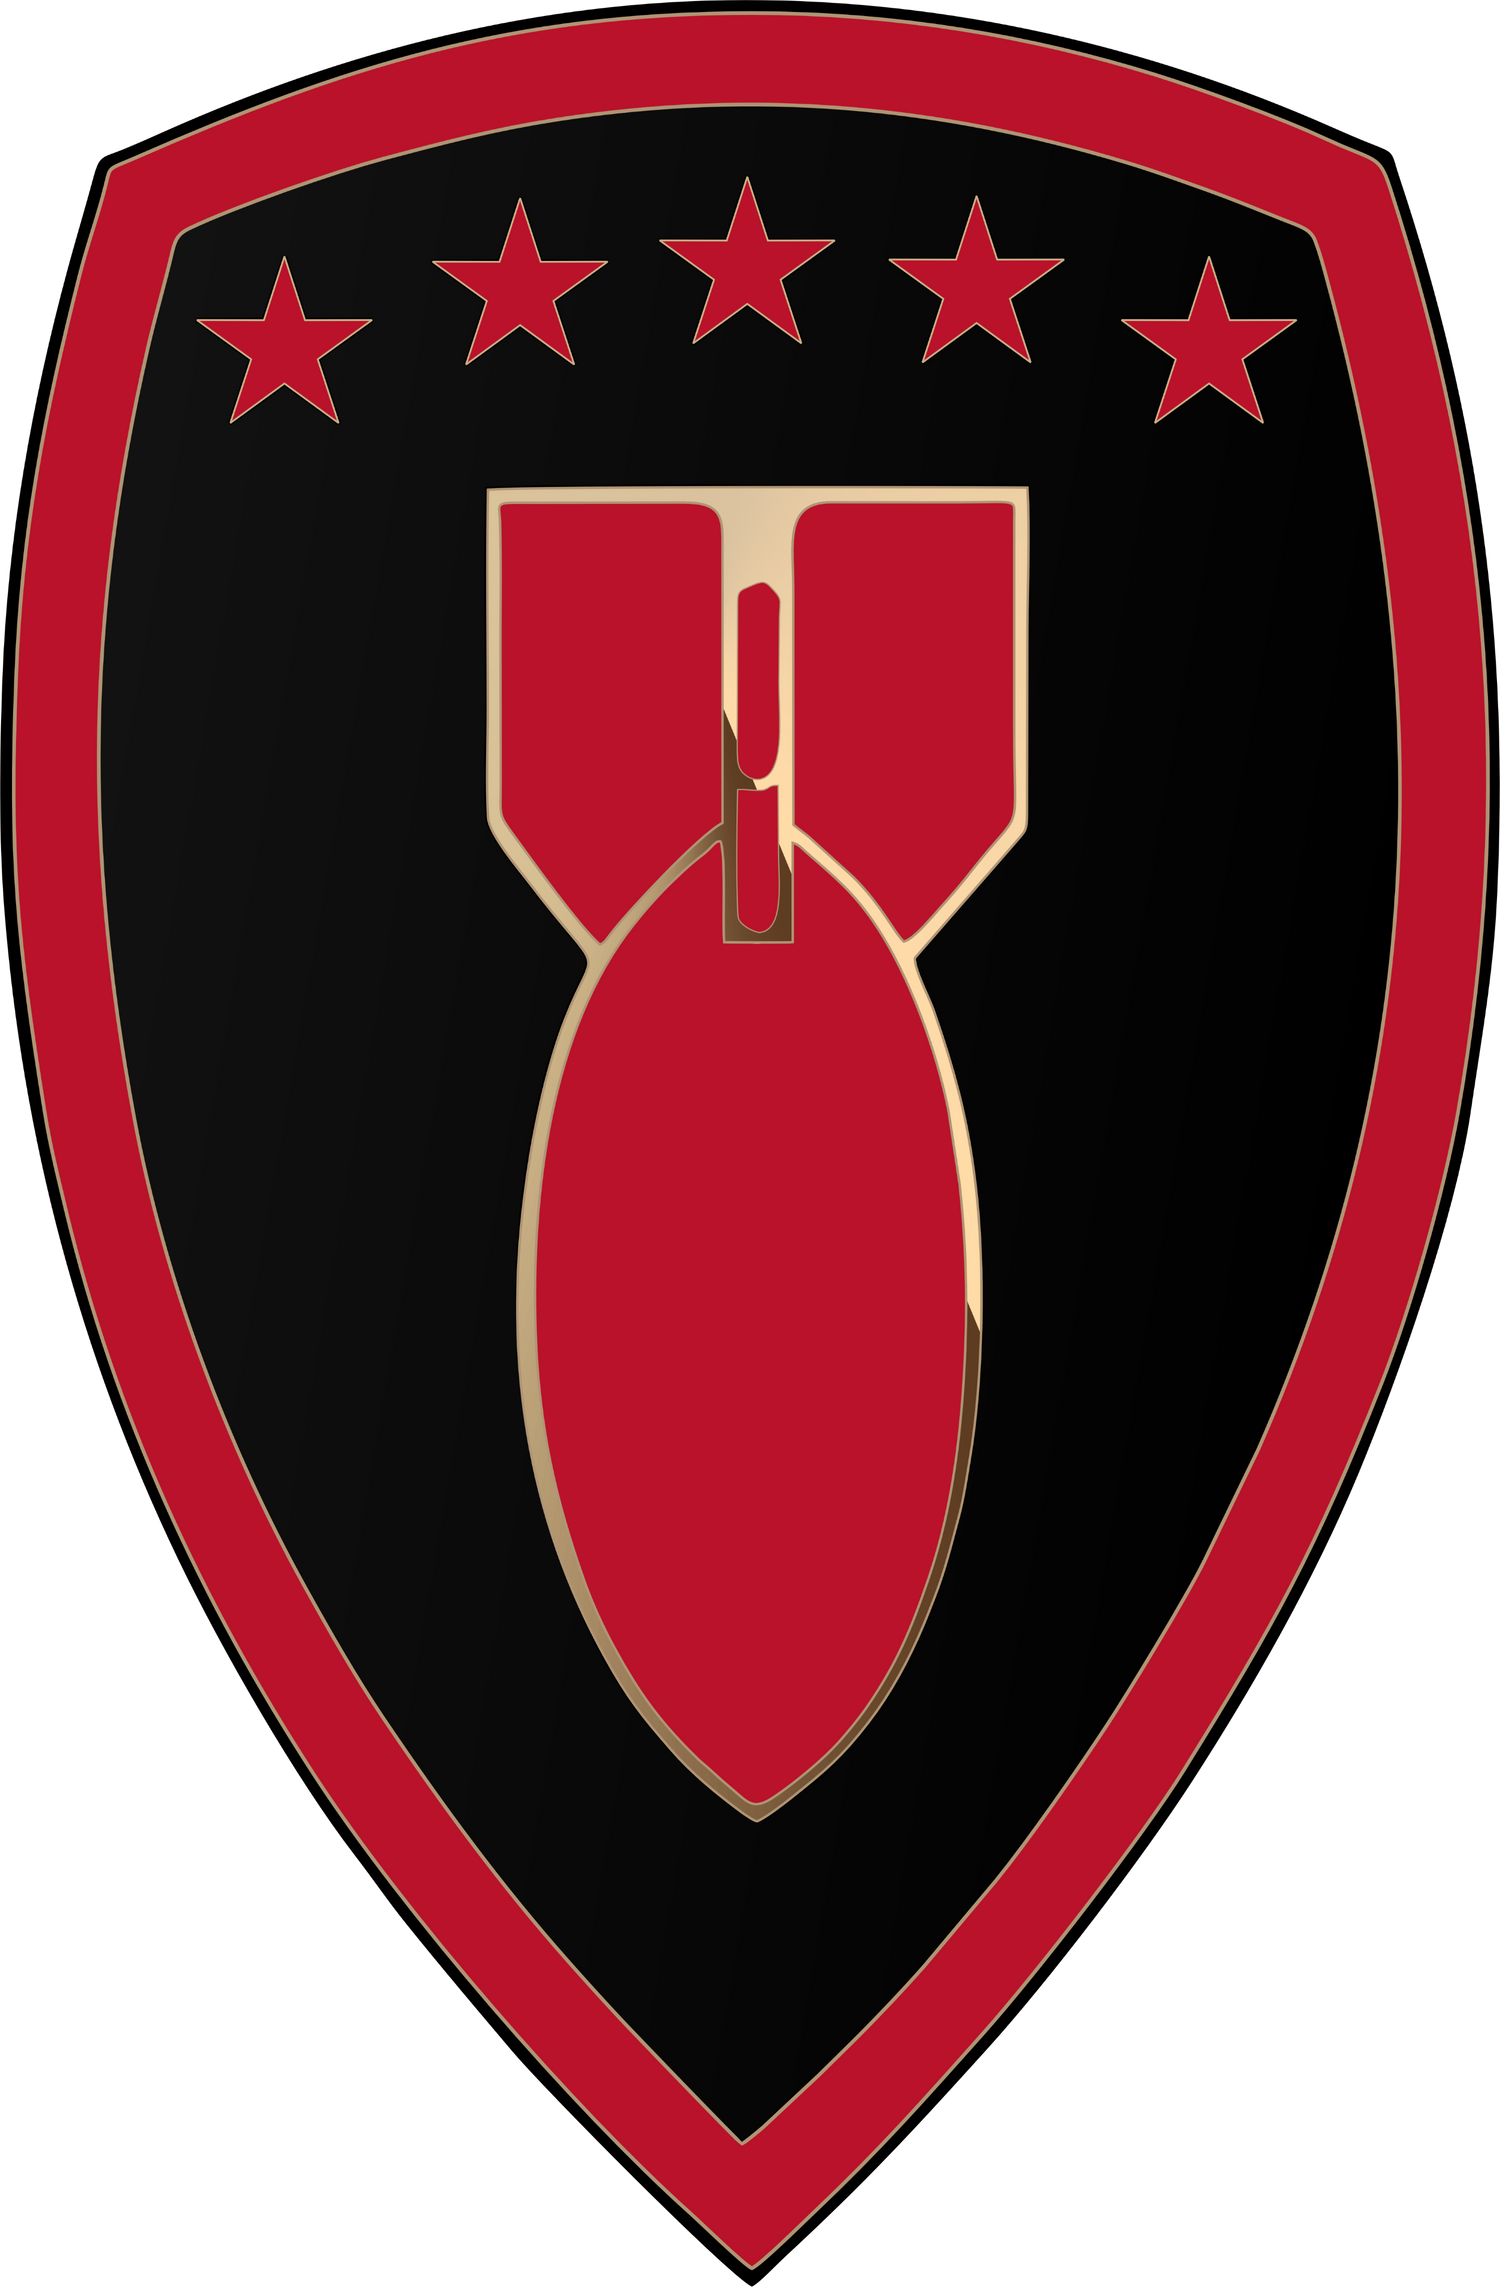 71st Ordnance Group (EOD)